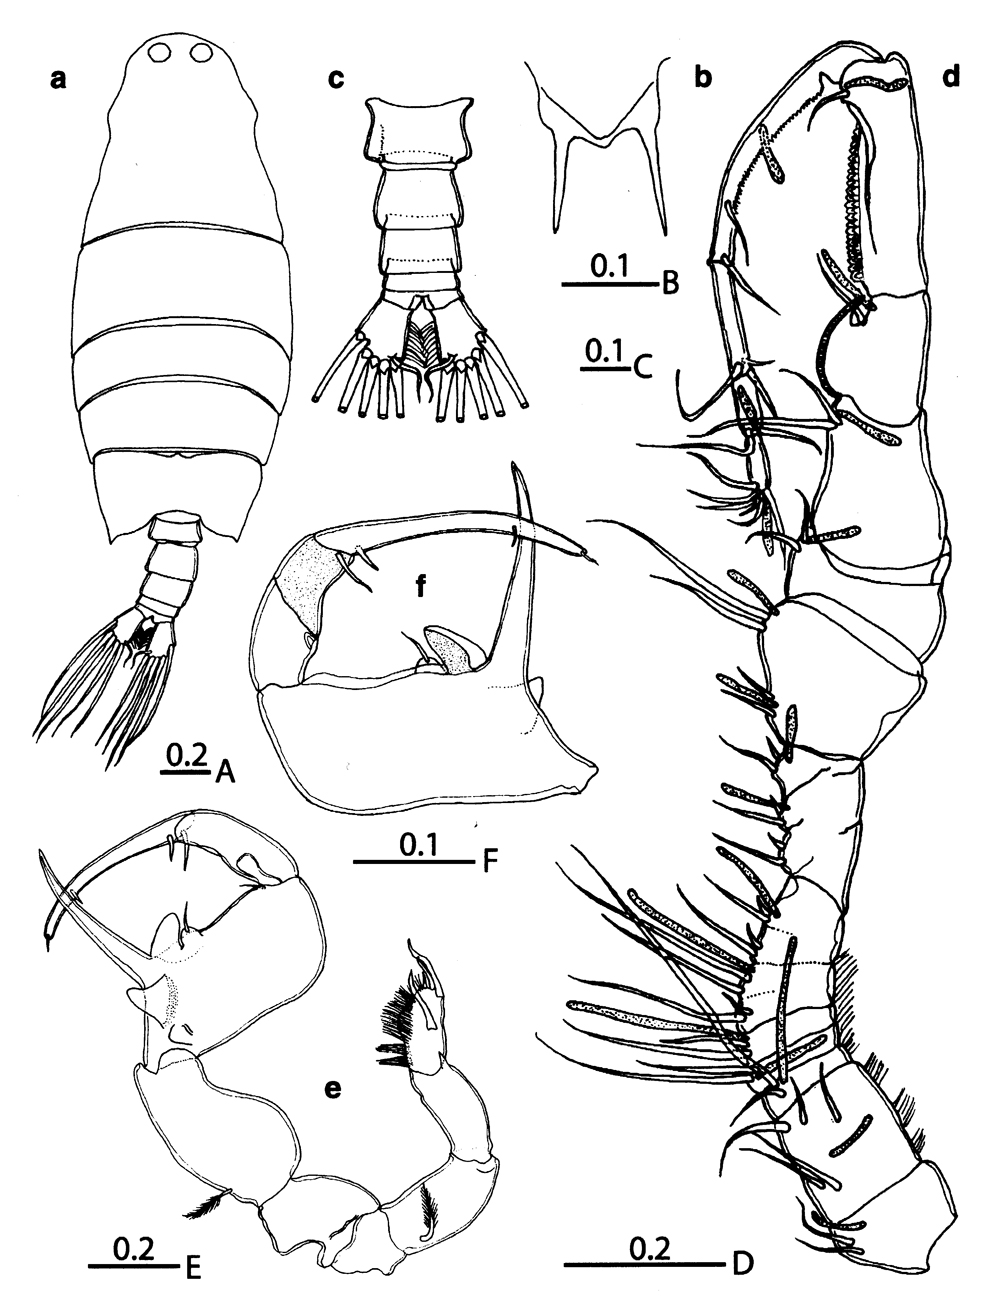 Espèce Labidocera boxshalli - Planche 5 de figures morphologiques